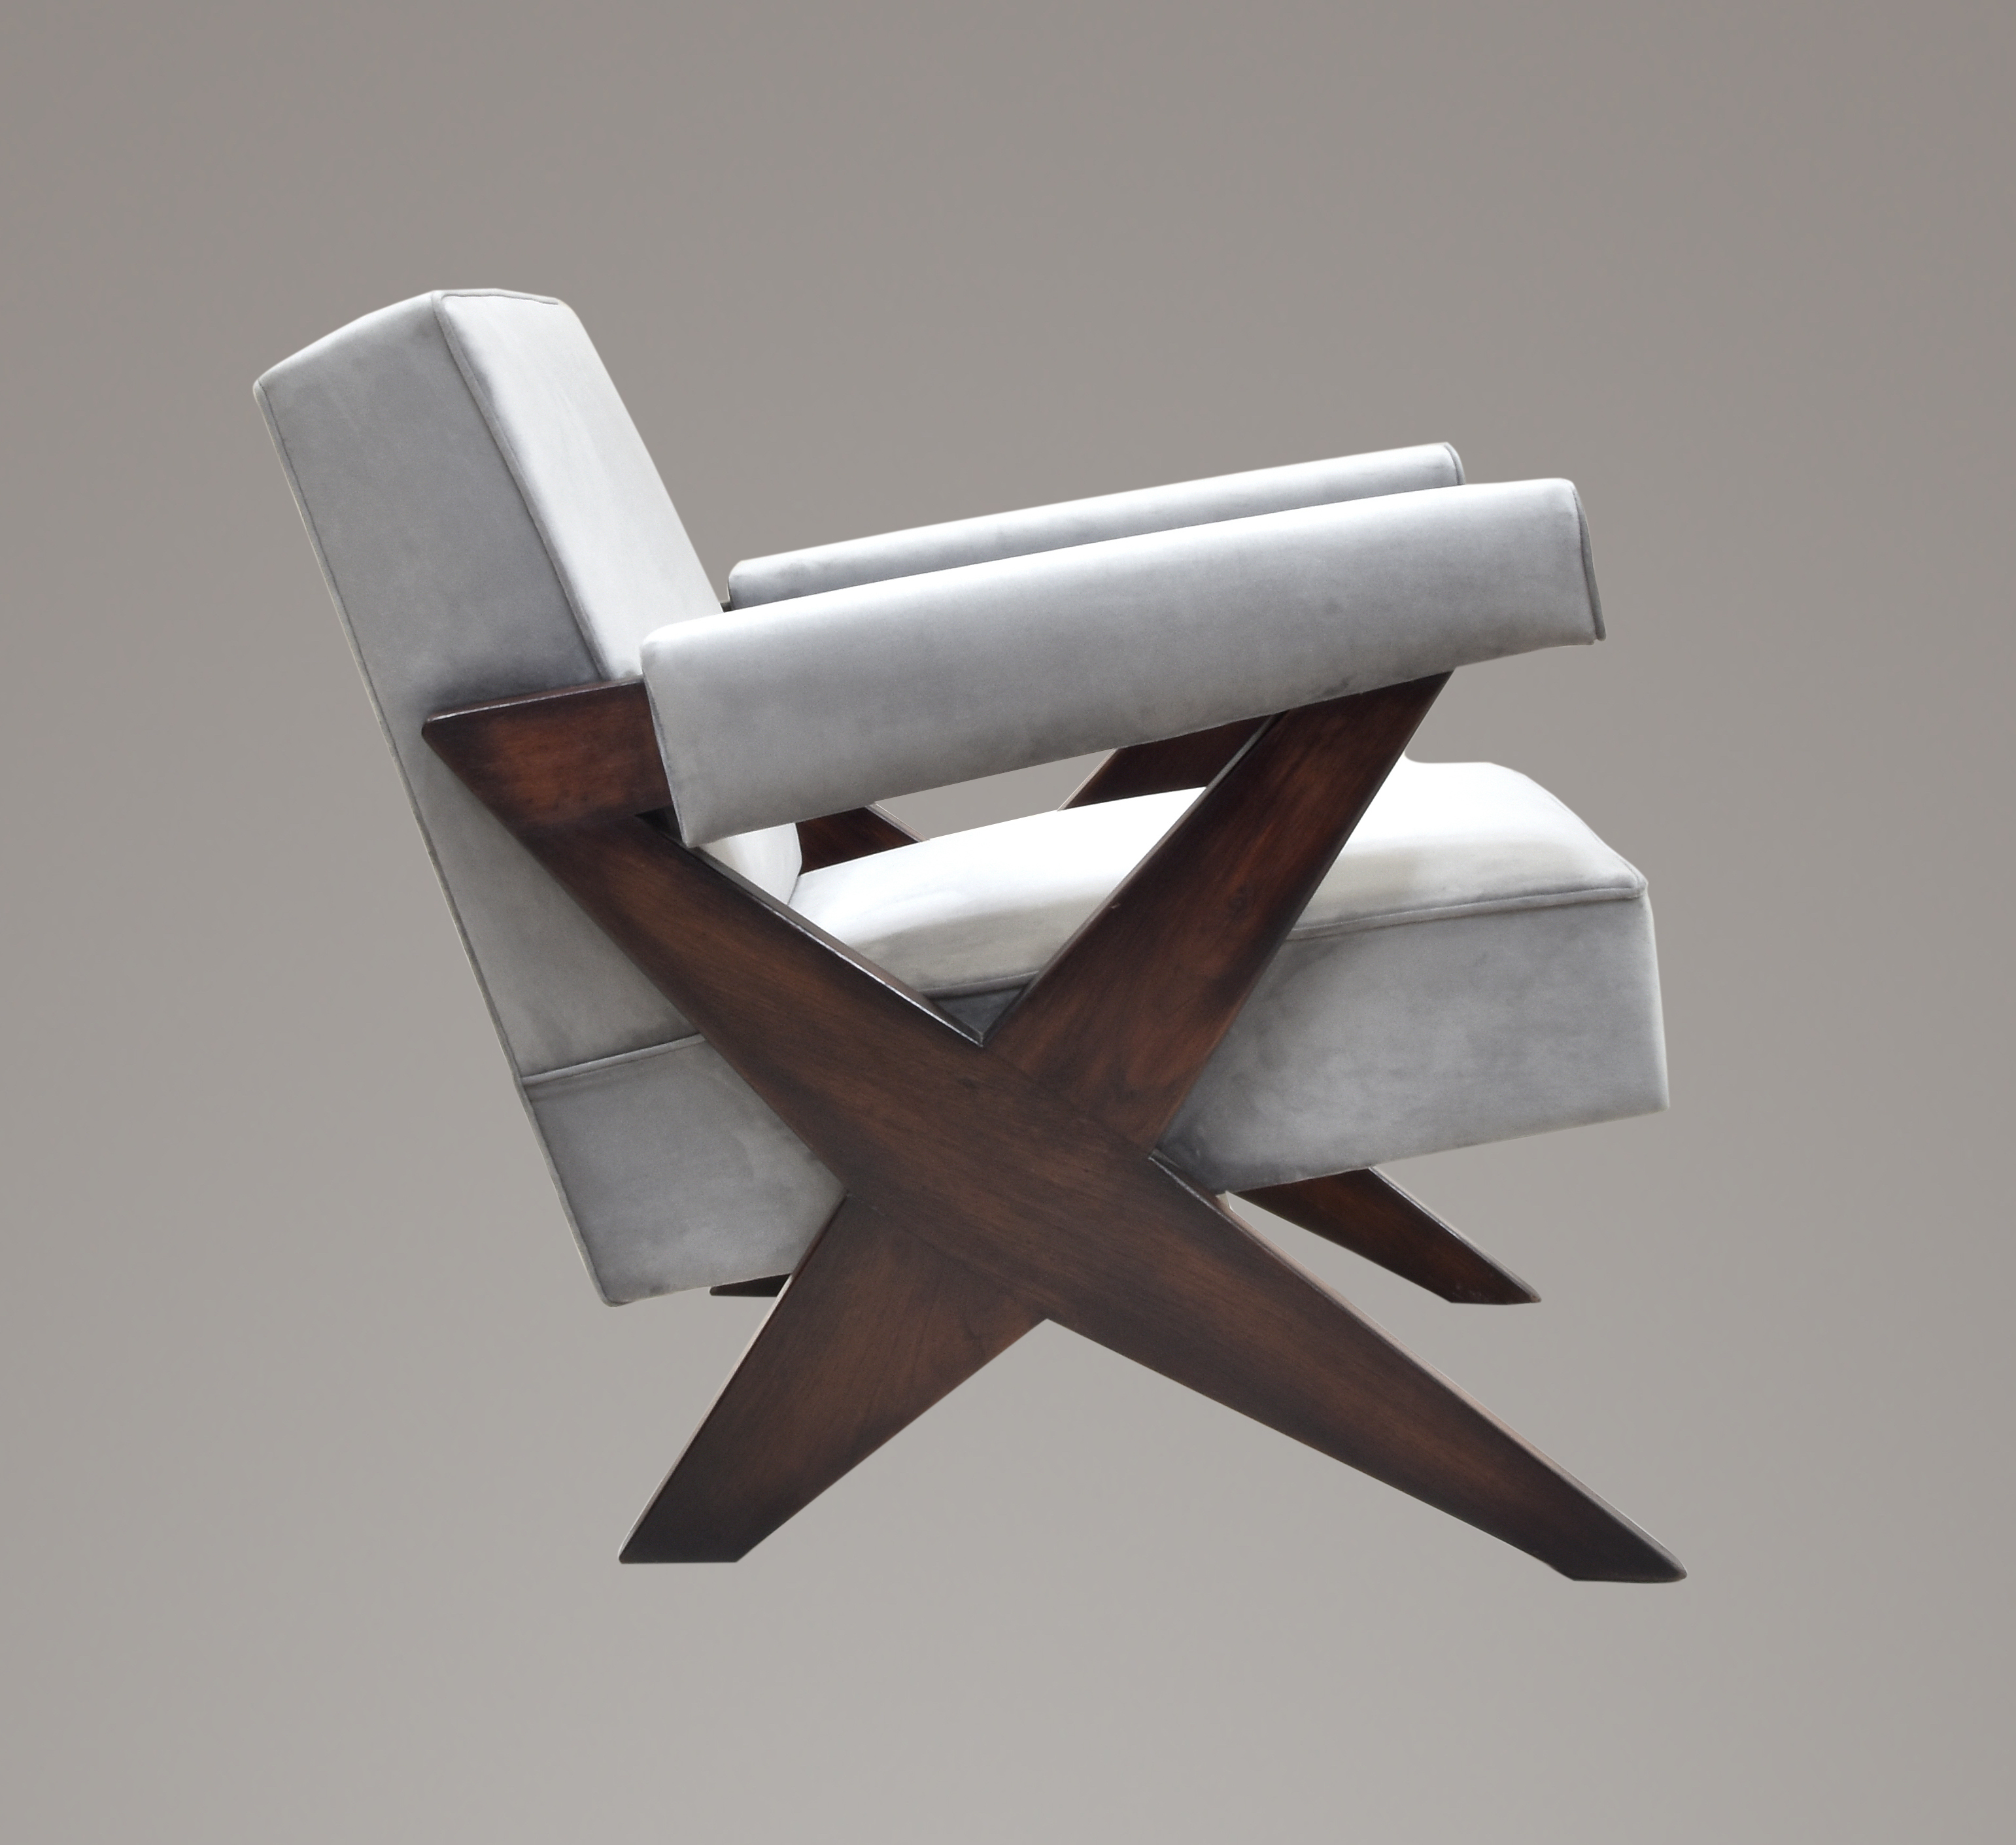 Pierre Jeanneret X Leg Lounge Chair